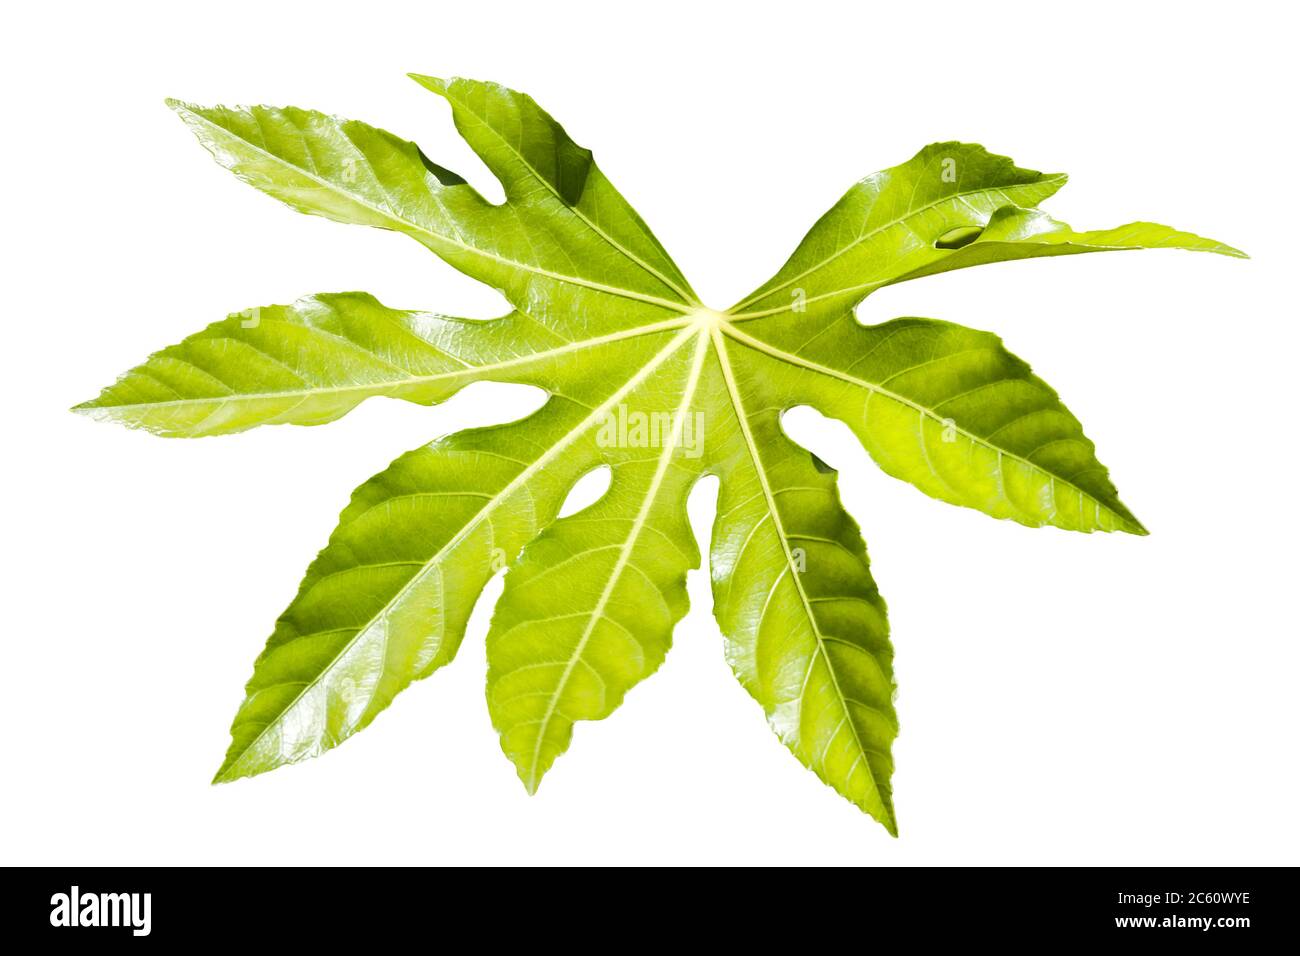 Fatsia Japonica ein grüner Blatt halbimmergrüner Strauch allgemein bekannt als Rizinusöl Pflanze ausgeschnitten und isoliert auf einem weißen Hintergrund Stockfoto